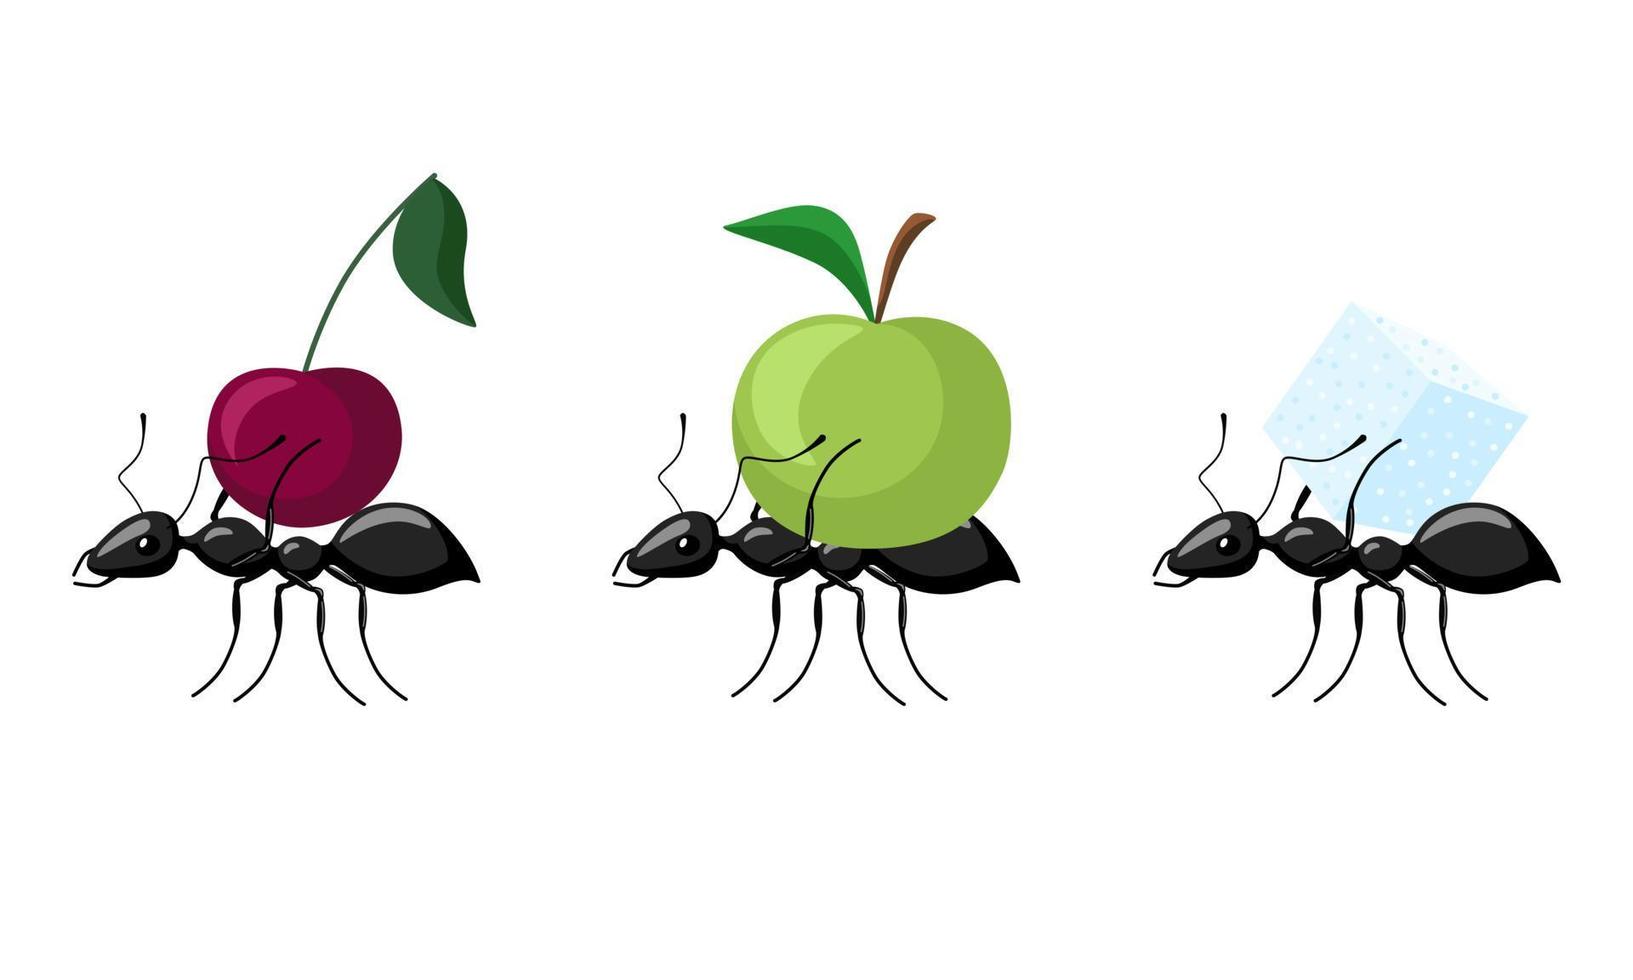 Stellen Sie Ameisen ein, die verschiedene Früchte tragen, die auf weißem Hintergrund lokalisiert werden. Ameisenkolonie, die Apfel, Kirsche, Zucker trägt und zum Ameisenhaufen geht. vektor